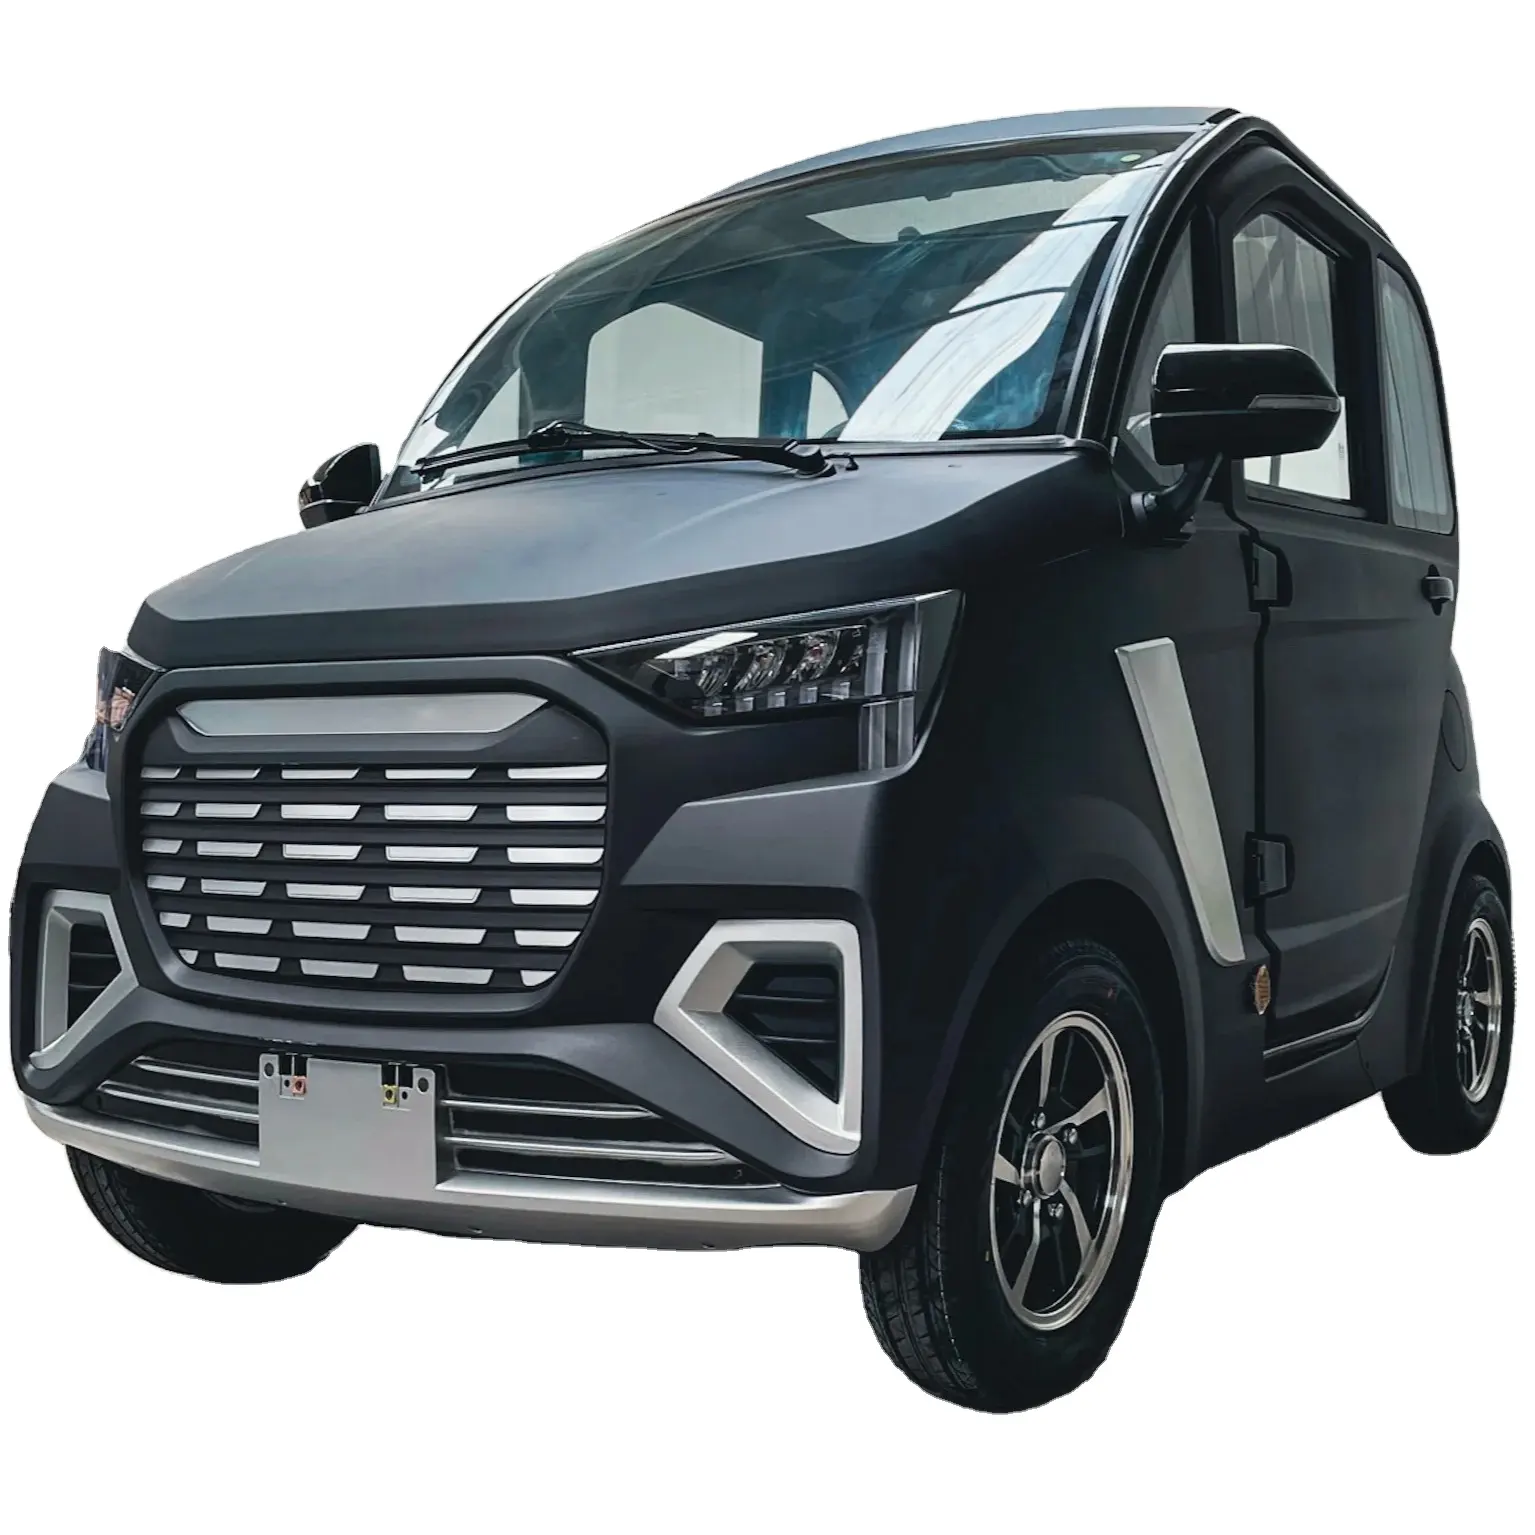 Freeland ZS Cabina eléctrica completa de gama alta Coche delantero dos asientos LHD Vehículo eléctrico Sedán gutzy EEC Coche de cabina cerrada eléctrica